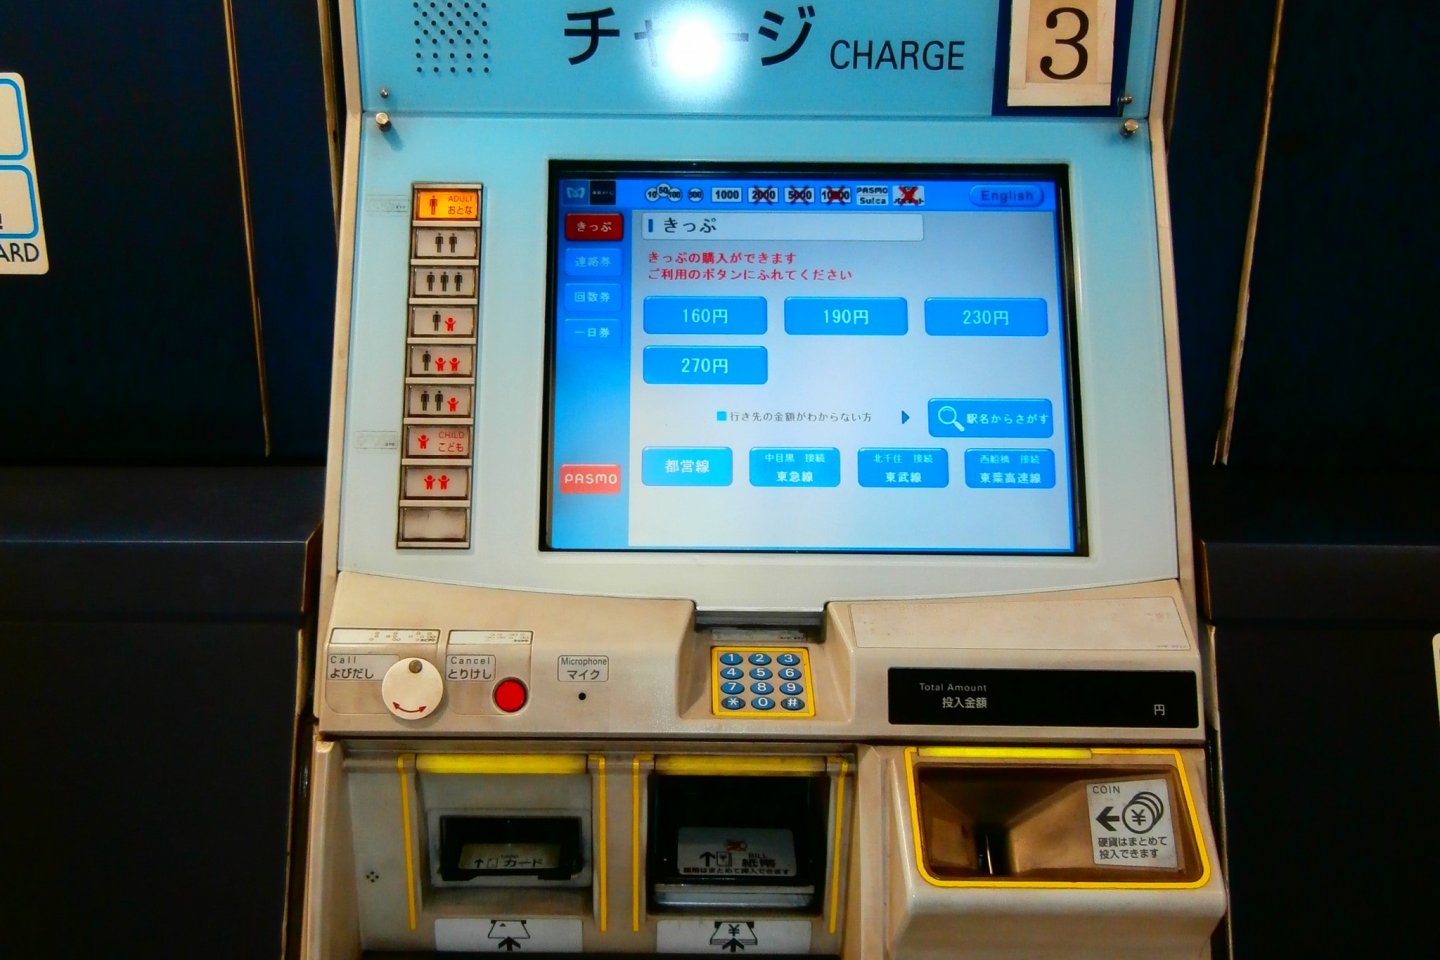  آلة بيع التذاكر في مترو طوكيو